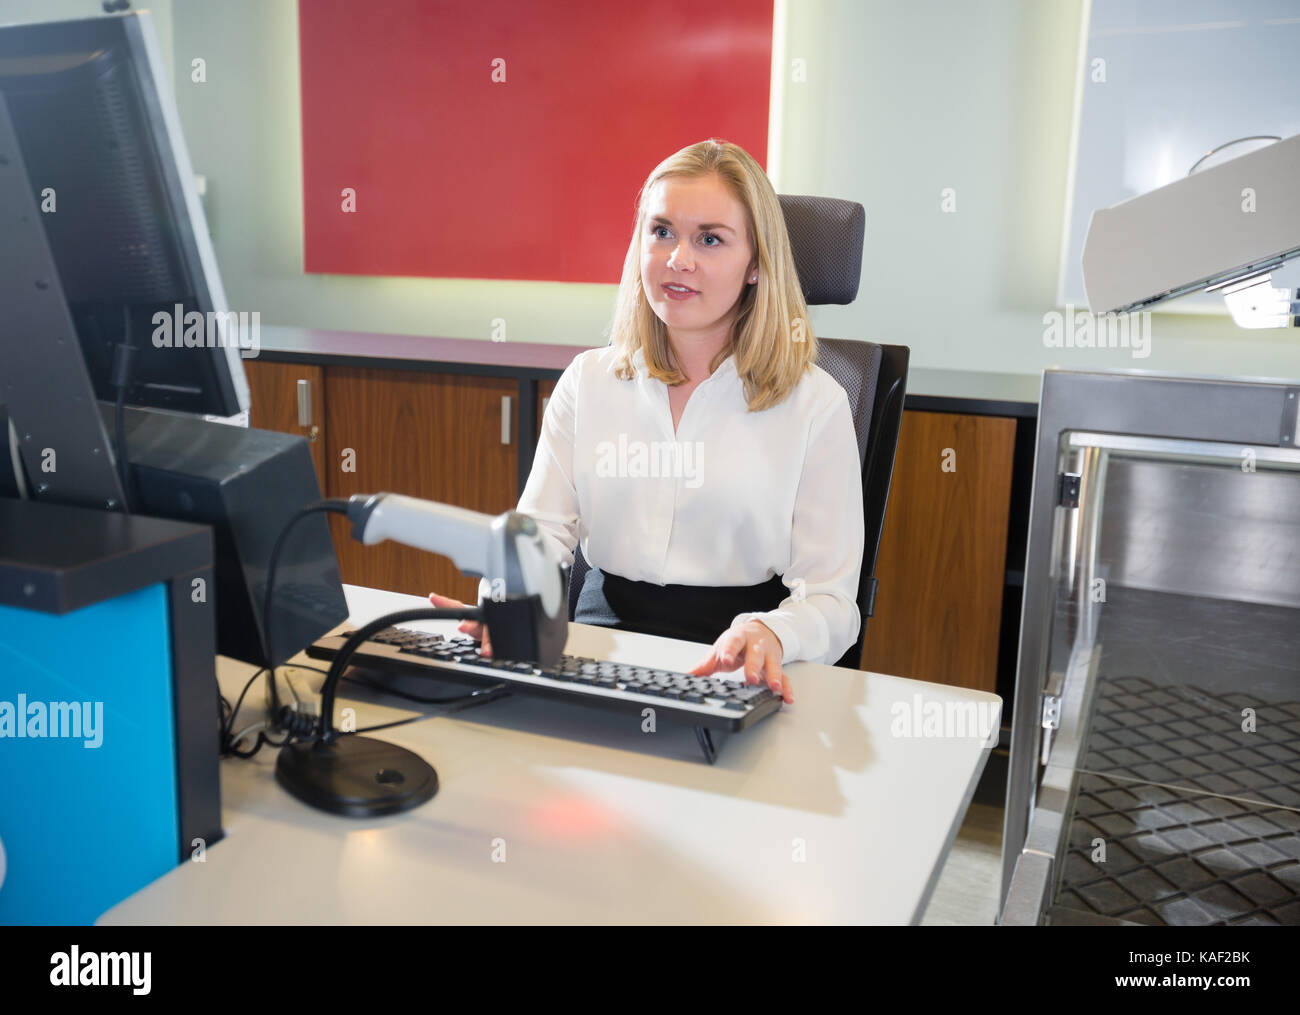 Le personnel féminin à l'aide d'ordinateur à l'enregistrement à l'aéroport Banque D'Images